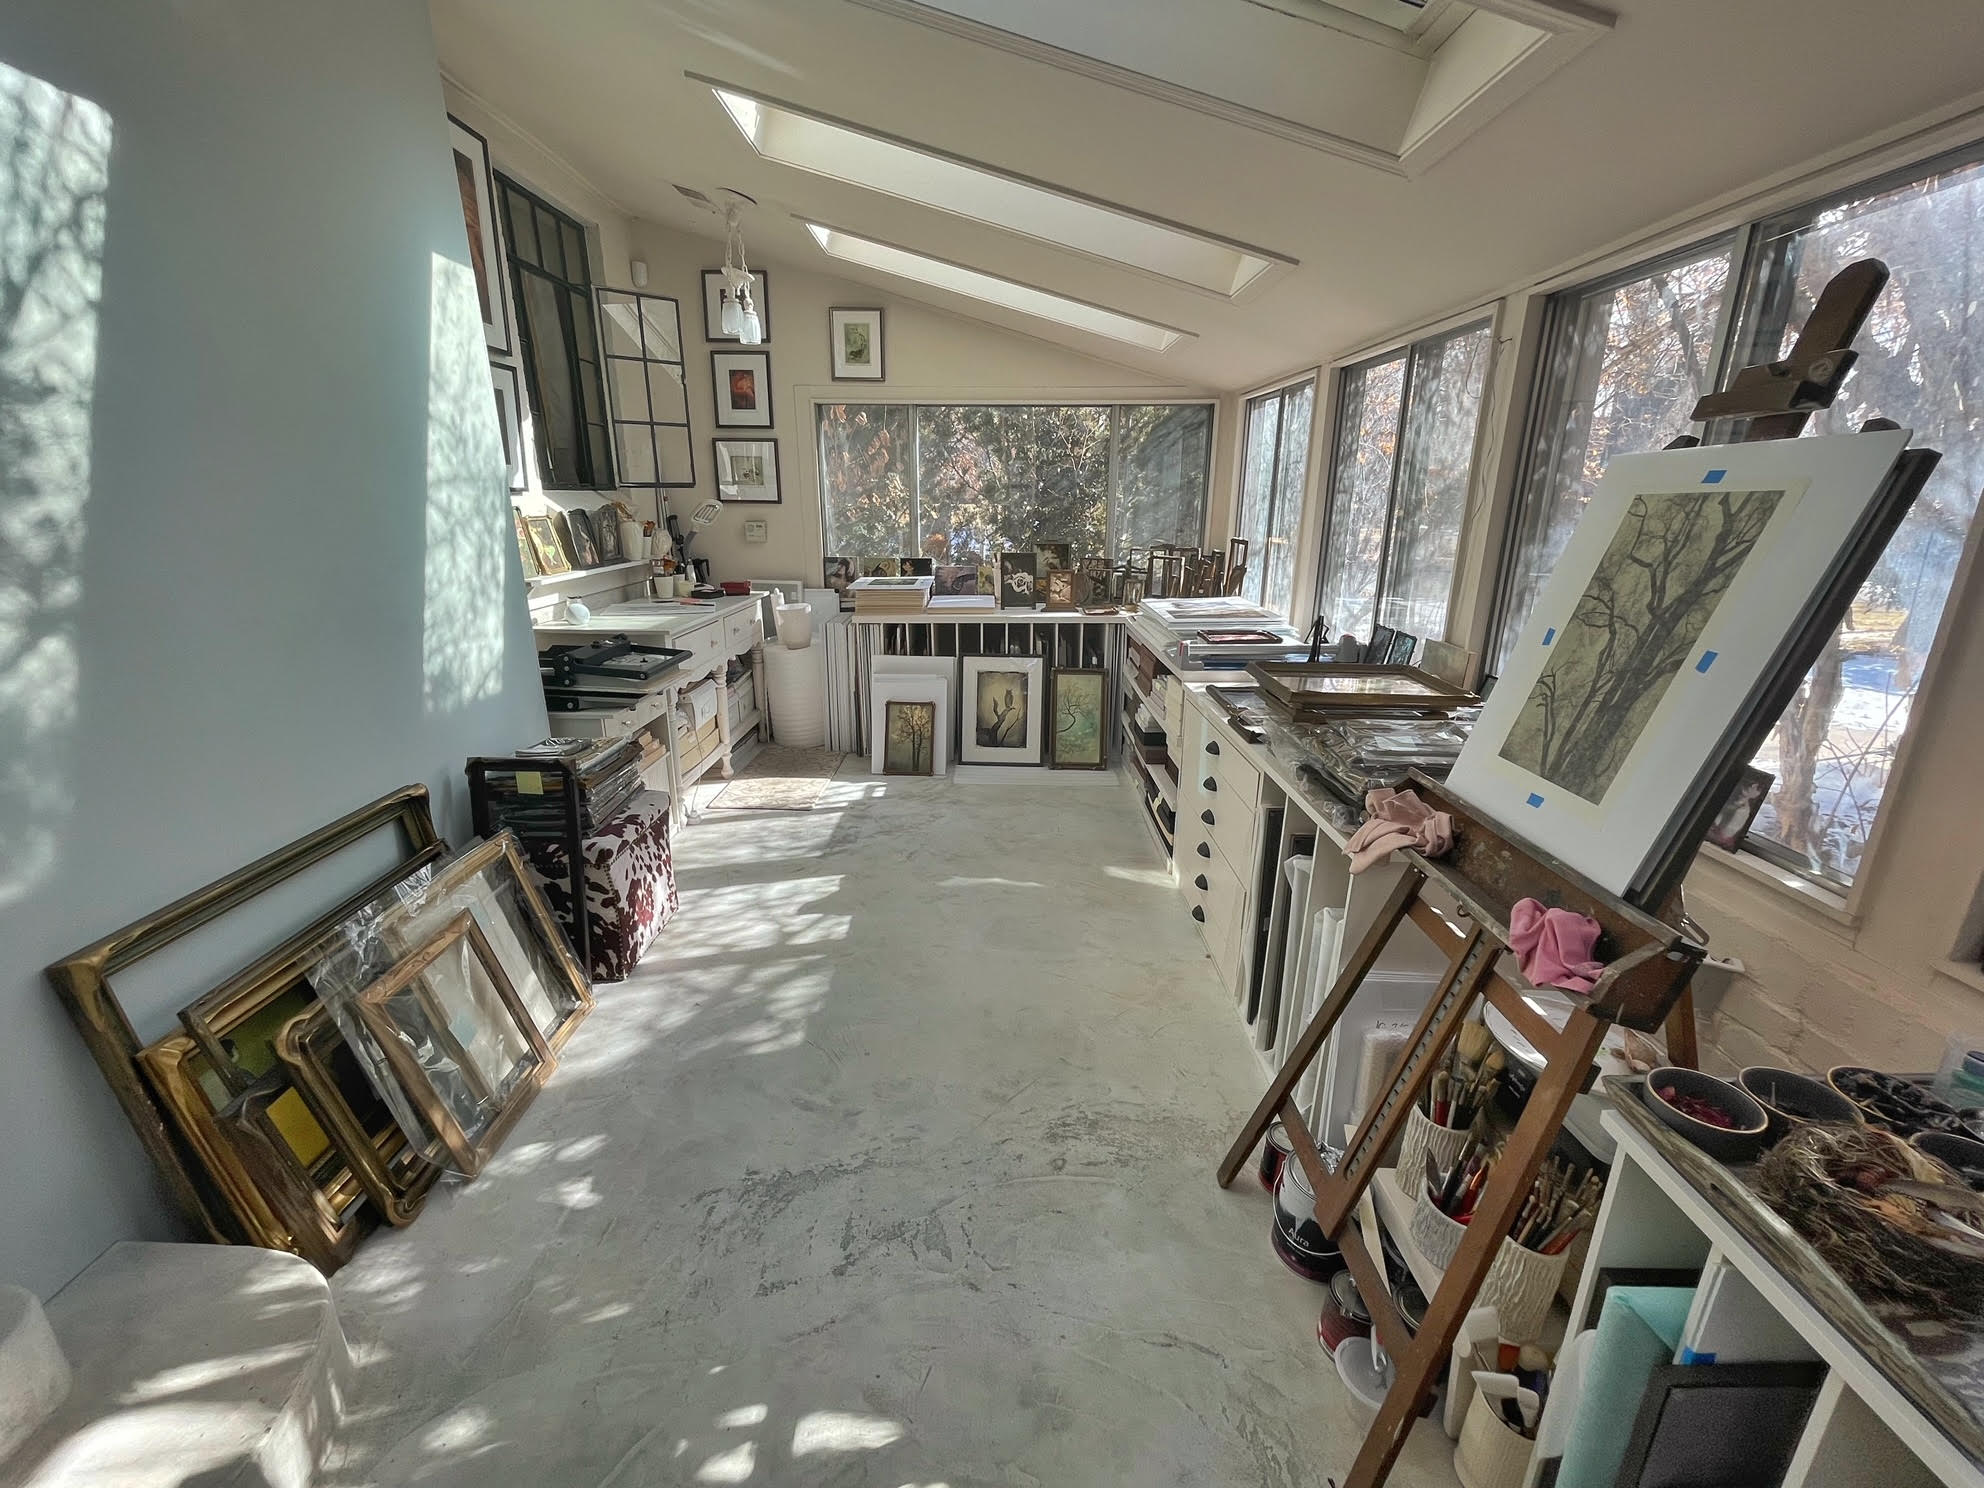 Wendi Schneider's Studio, Still in the Studio, Catherine Couturier Gallery